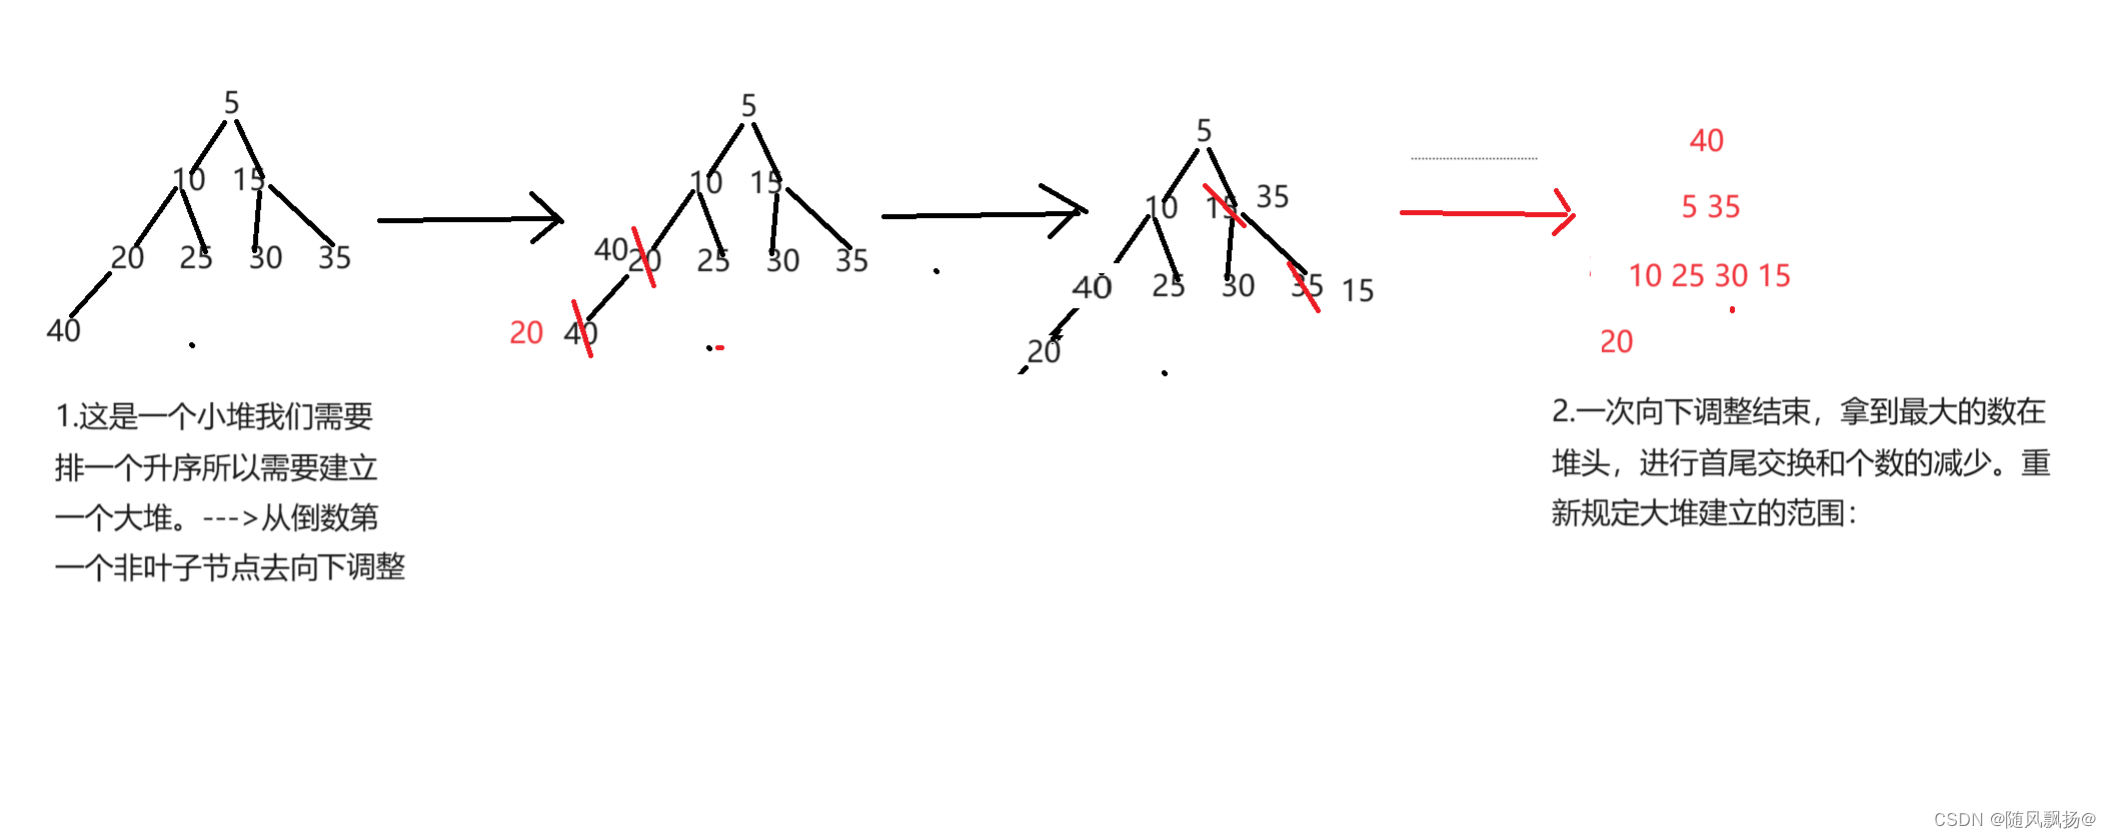 数据结构基础6：二叉树的实现和堆。